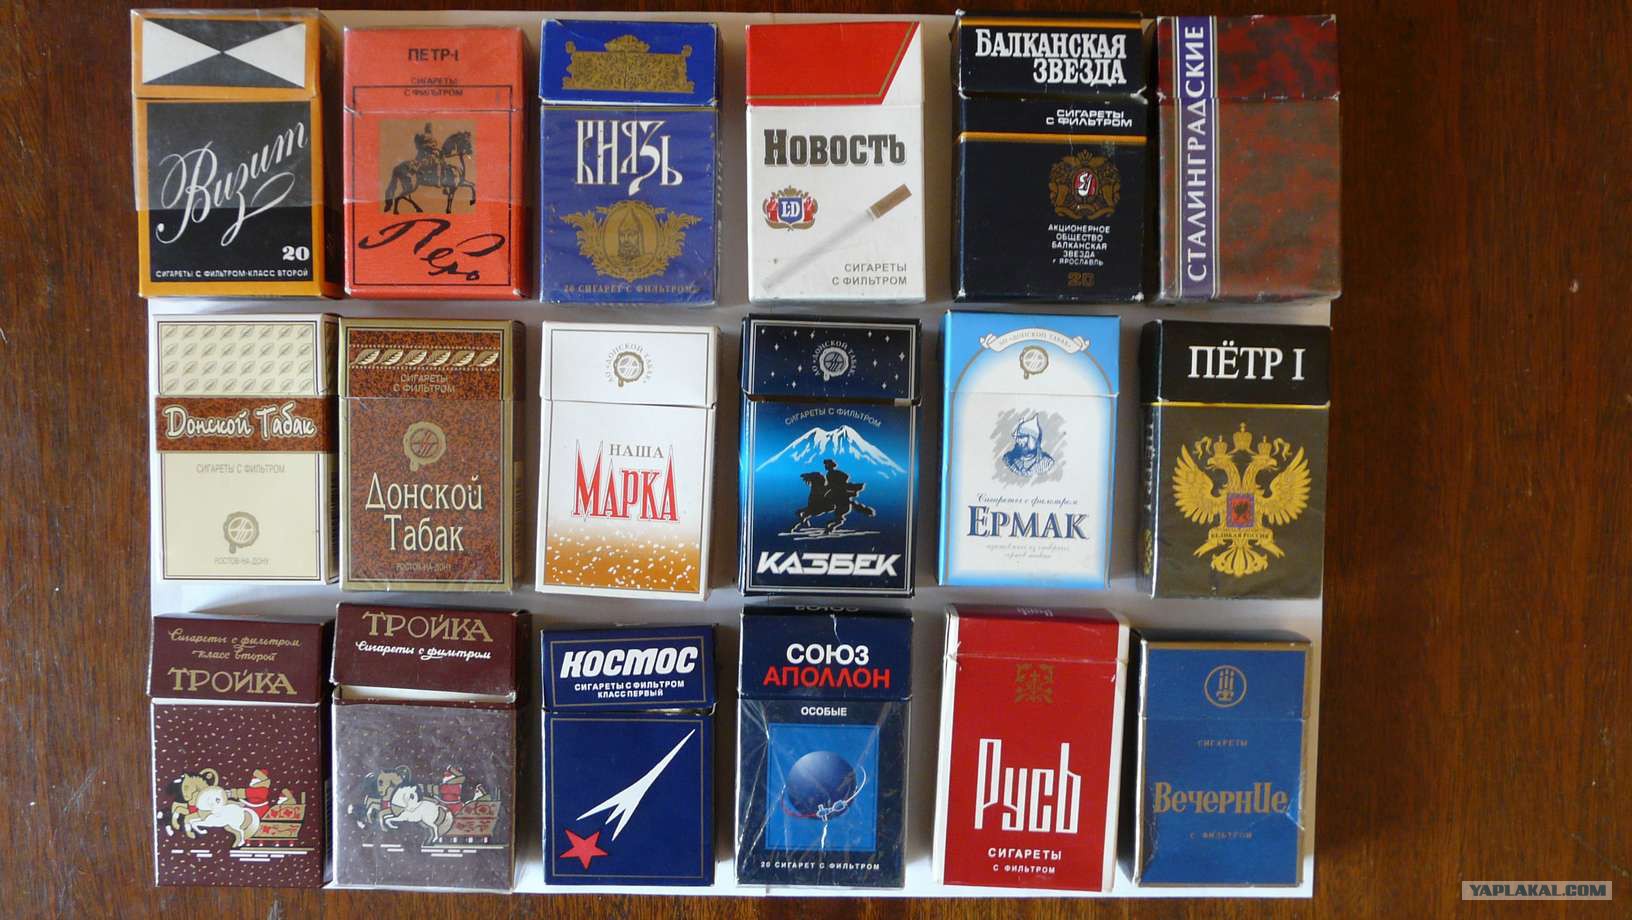 Российские сигареты купить